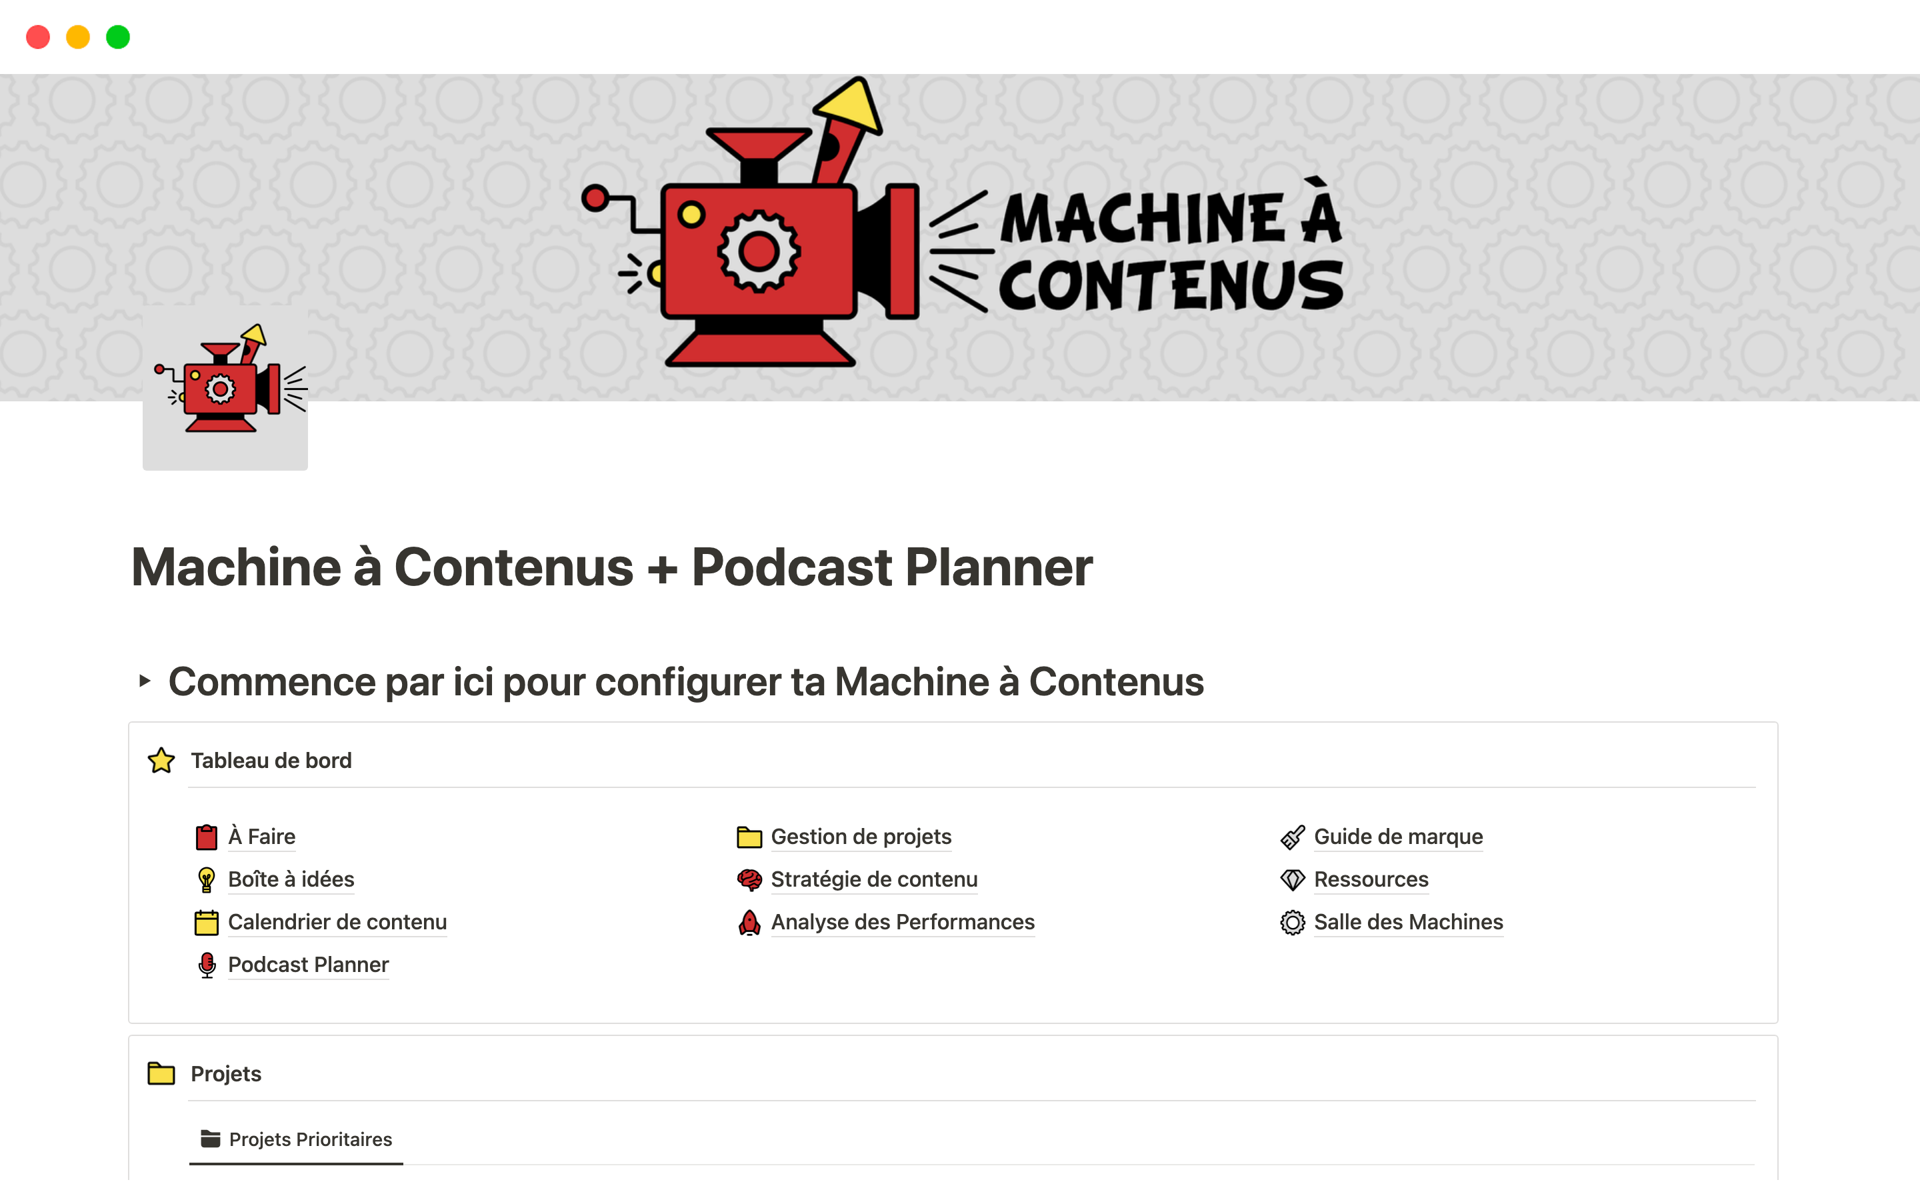 Uma prévia do modelo para Machine à Contenus + Podcast Planner